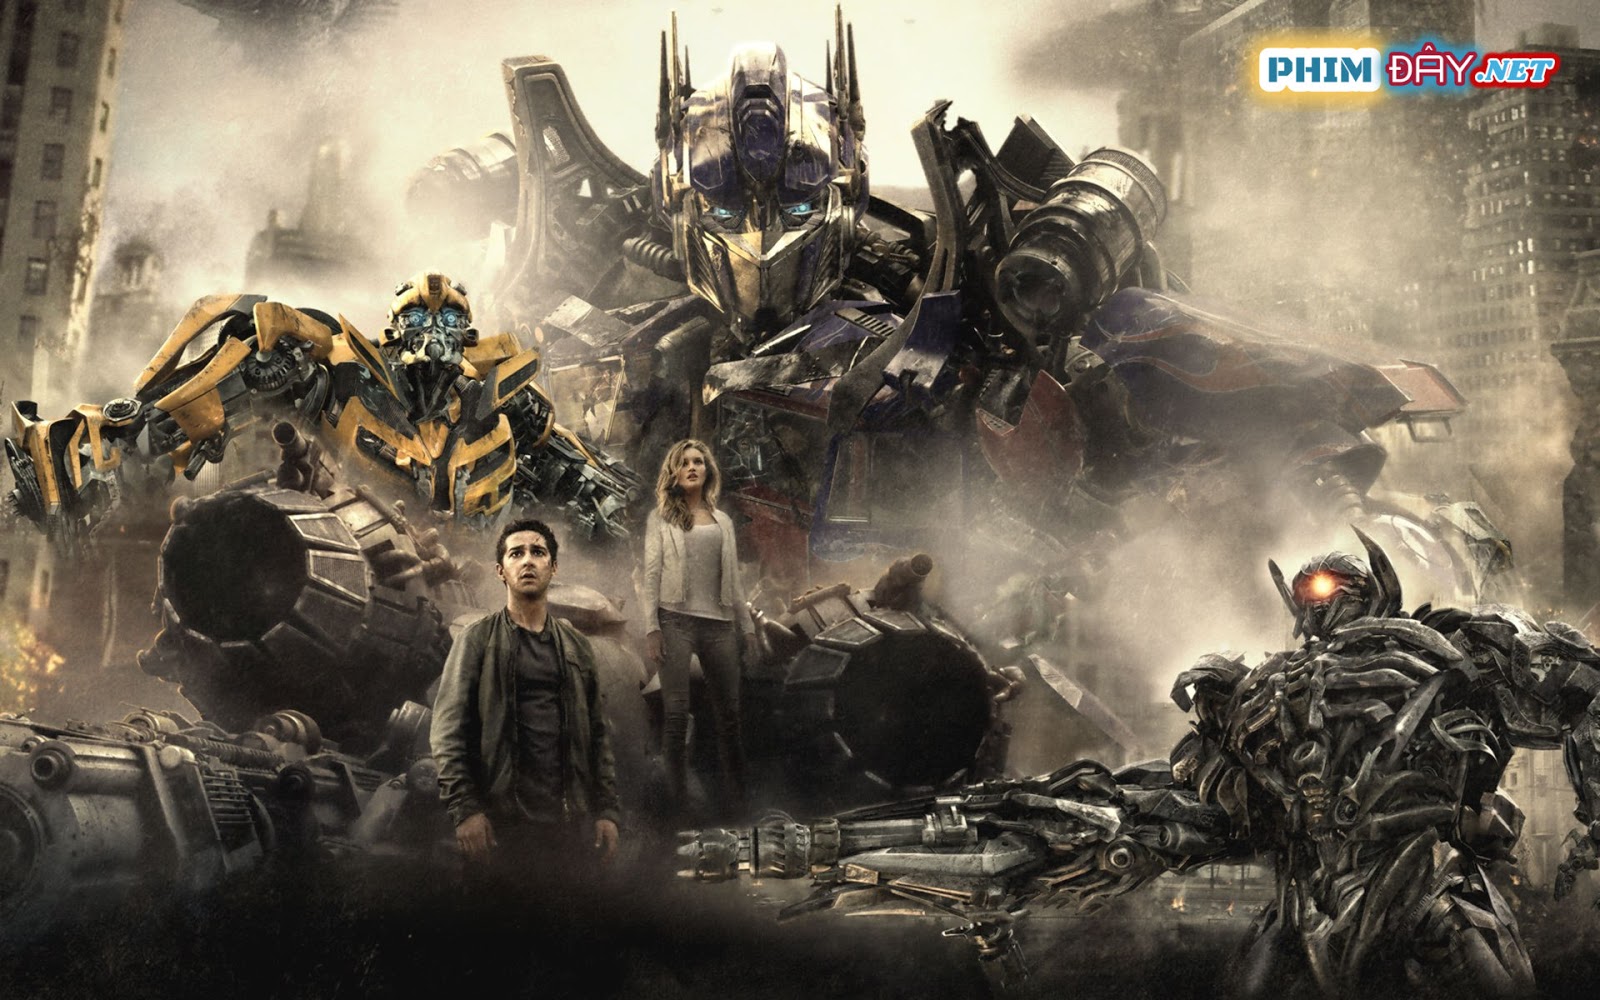 ROBOT ĐẠI CHIẾN 3: VÙNG TỐI CỦA MẶT TRĂNG - Transformers 3: Dark of the Moon (2011)